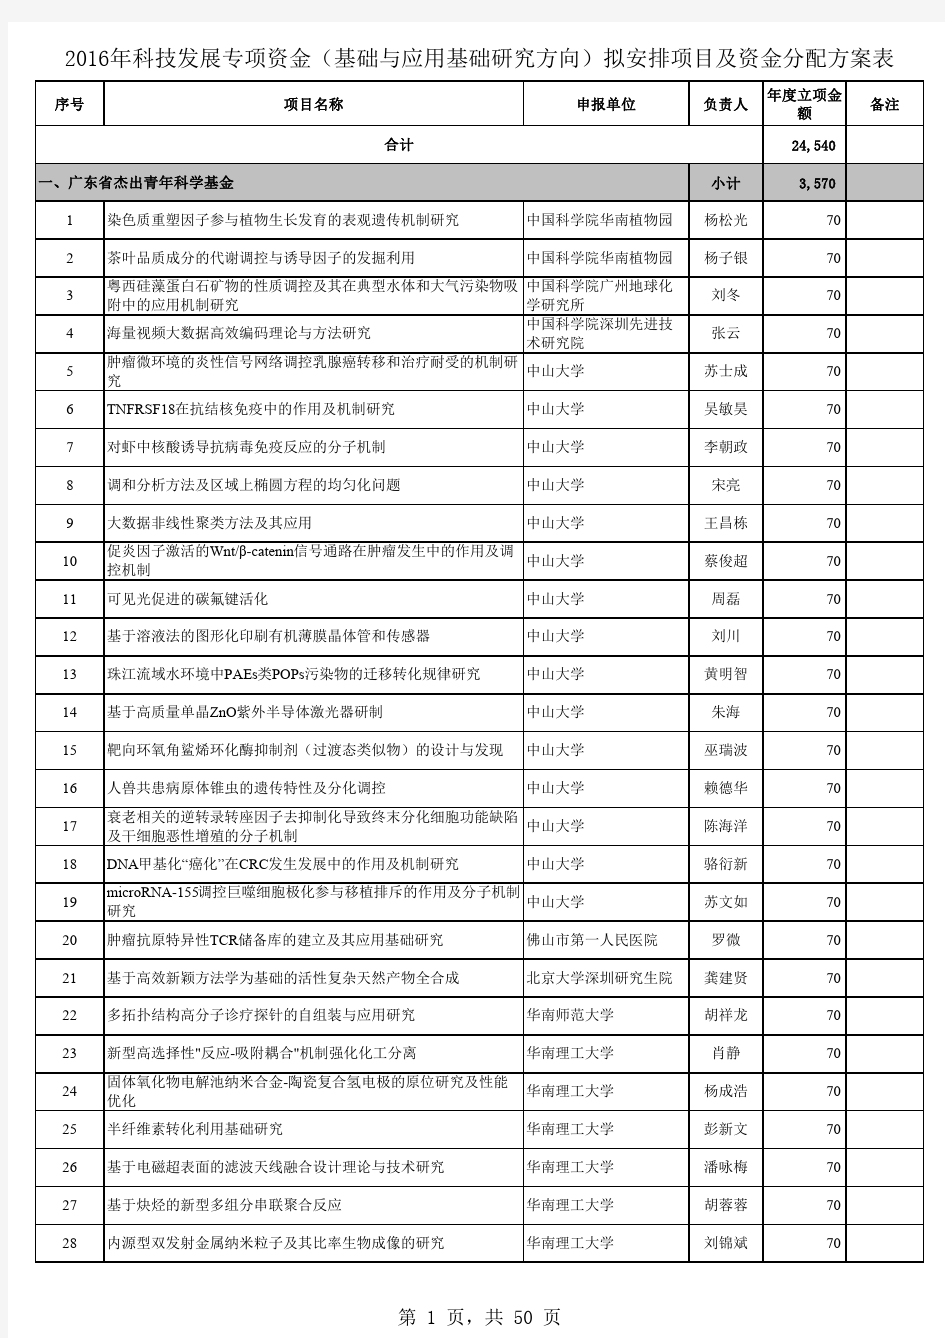 2016年广东省自然科学基金资助名单